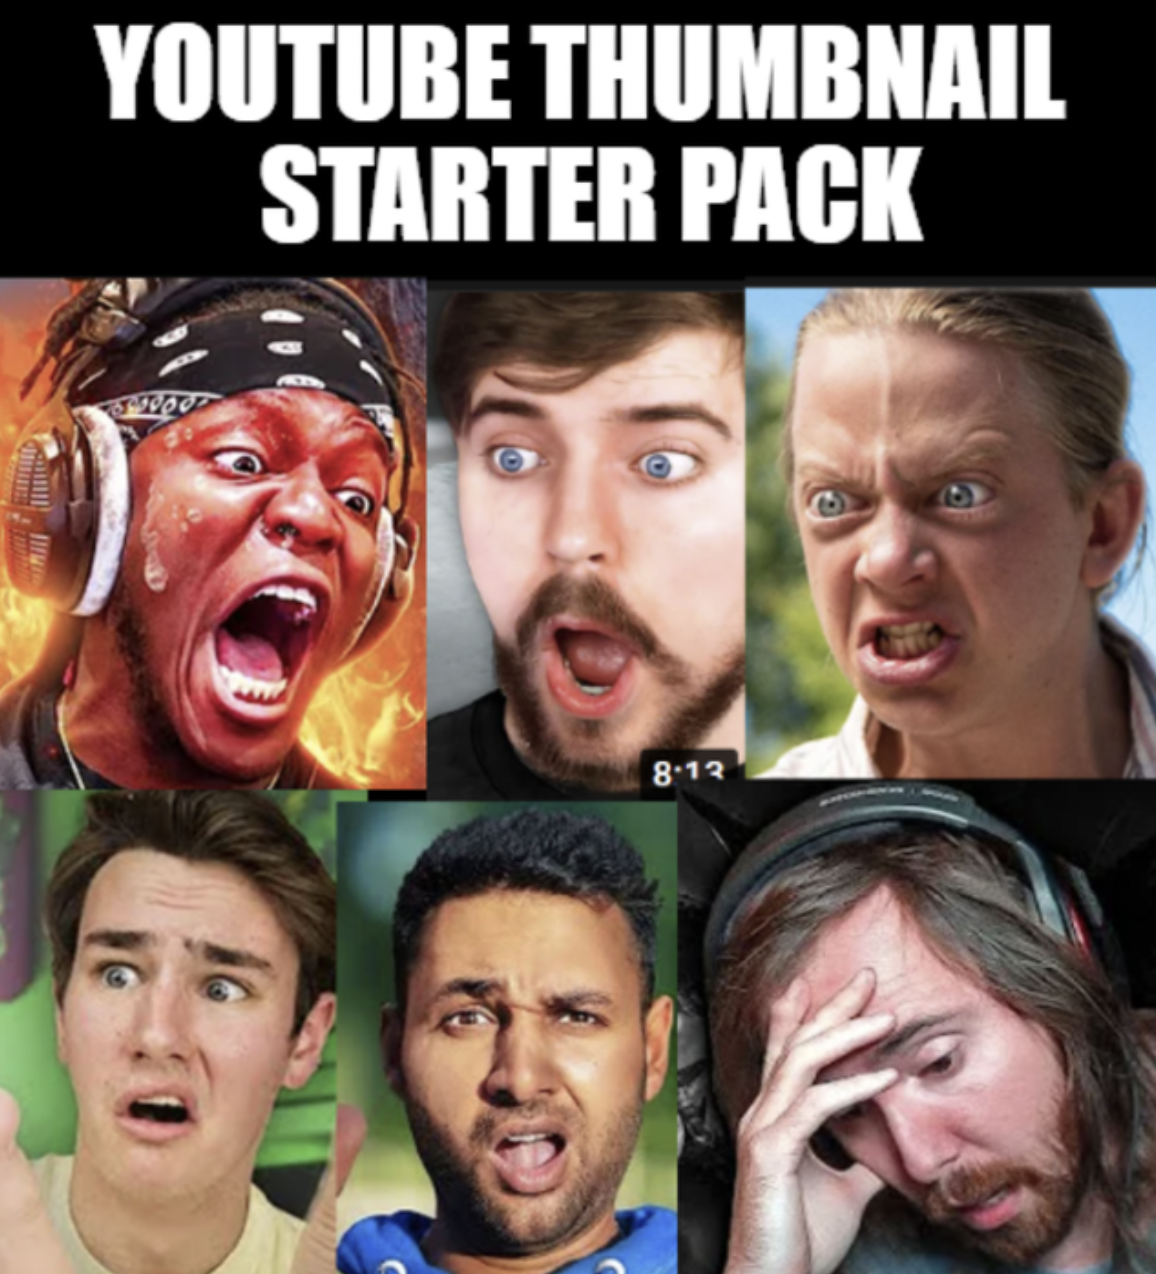 Dank Memes - stand up - Youtube Thumbnail Starter Pack